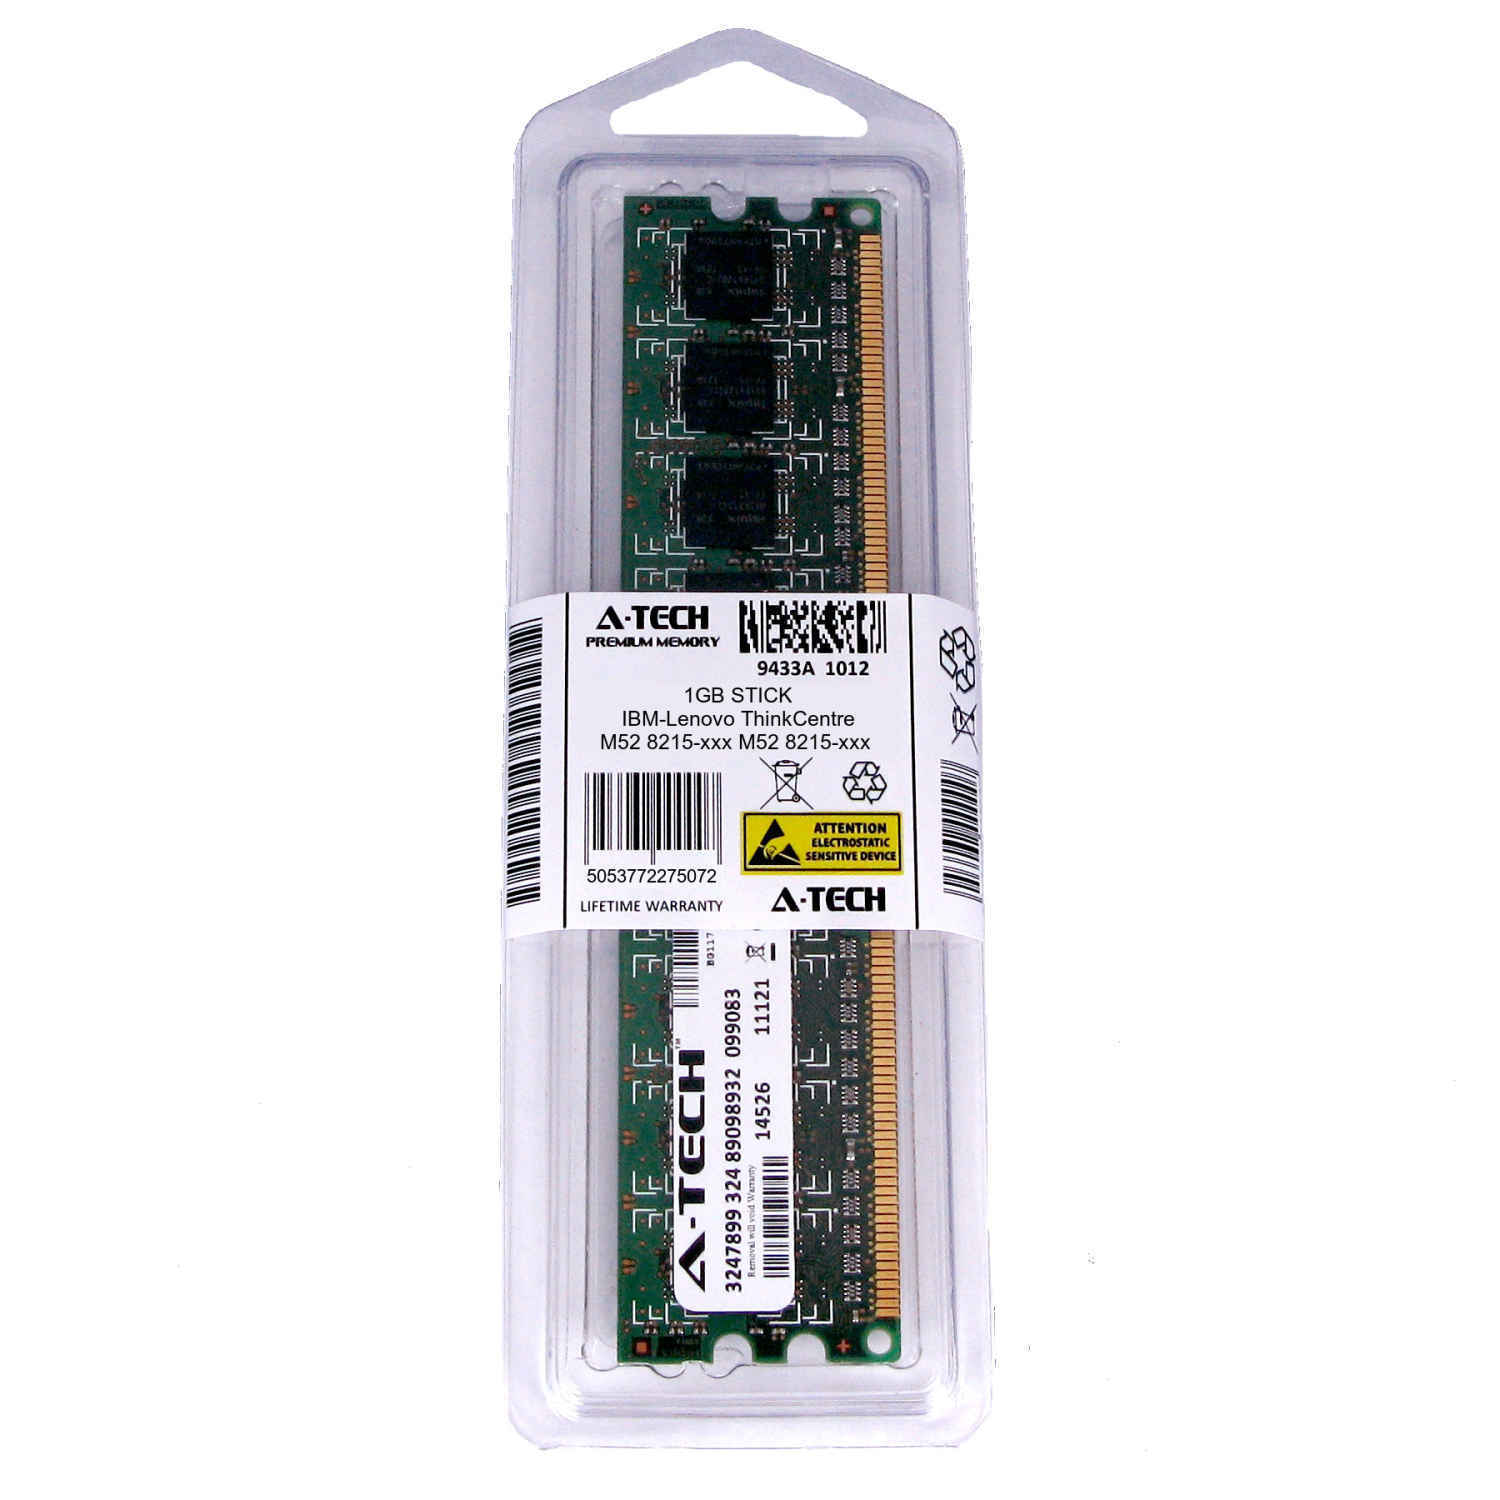 1GB DIMM IBM-Lenovo ThinkCentre M52 8215-xxx 8216-xxx 9210-xxx Ram Memory